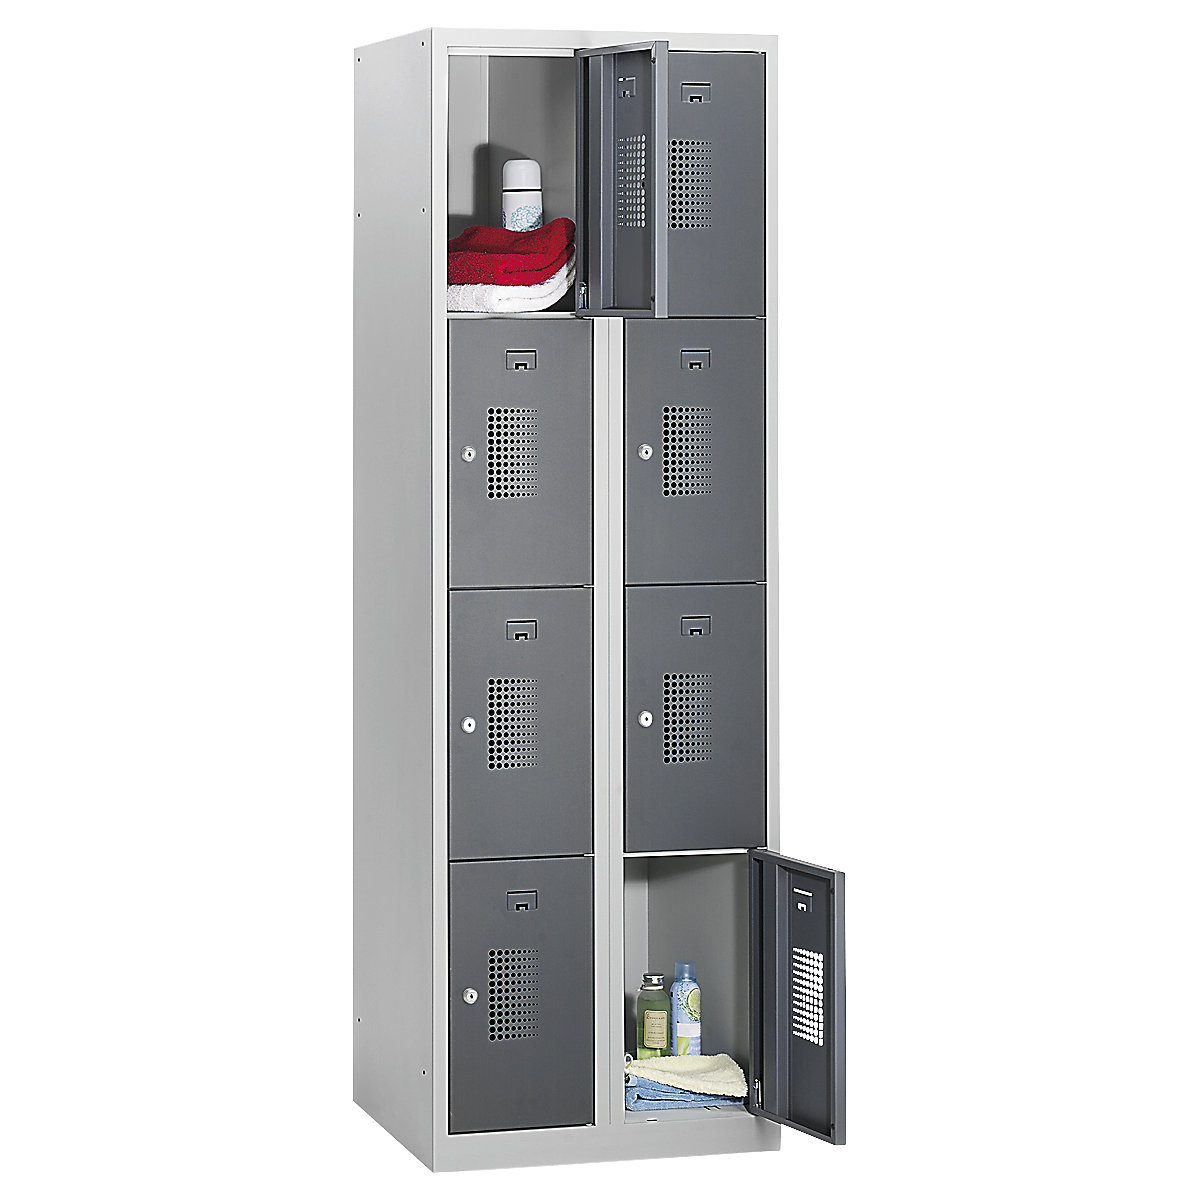 AMSTERDAM zárható rekeszes szekrény – eurokraft basic, 2 fülke, szélesség 600 mm, 8 rekesz, hengerzár, világosszürke váz, bazaltszürke ajtók